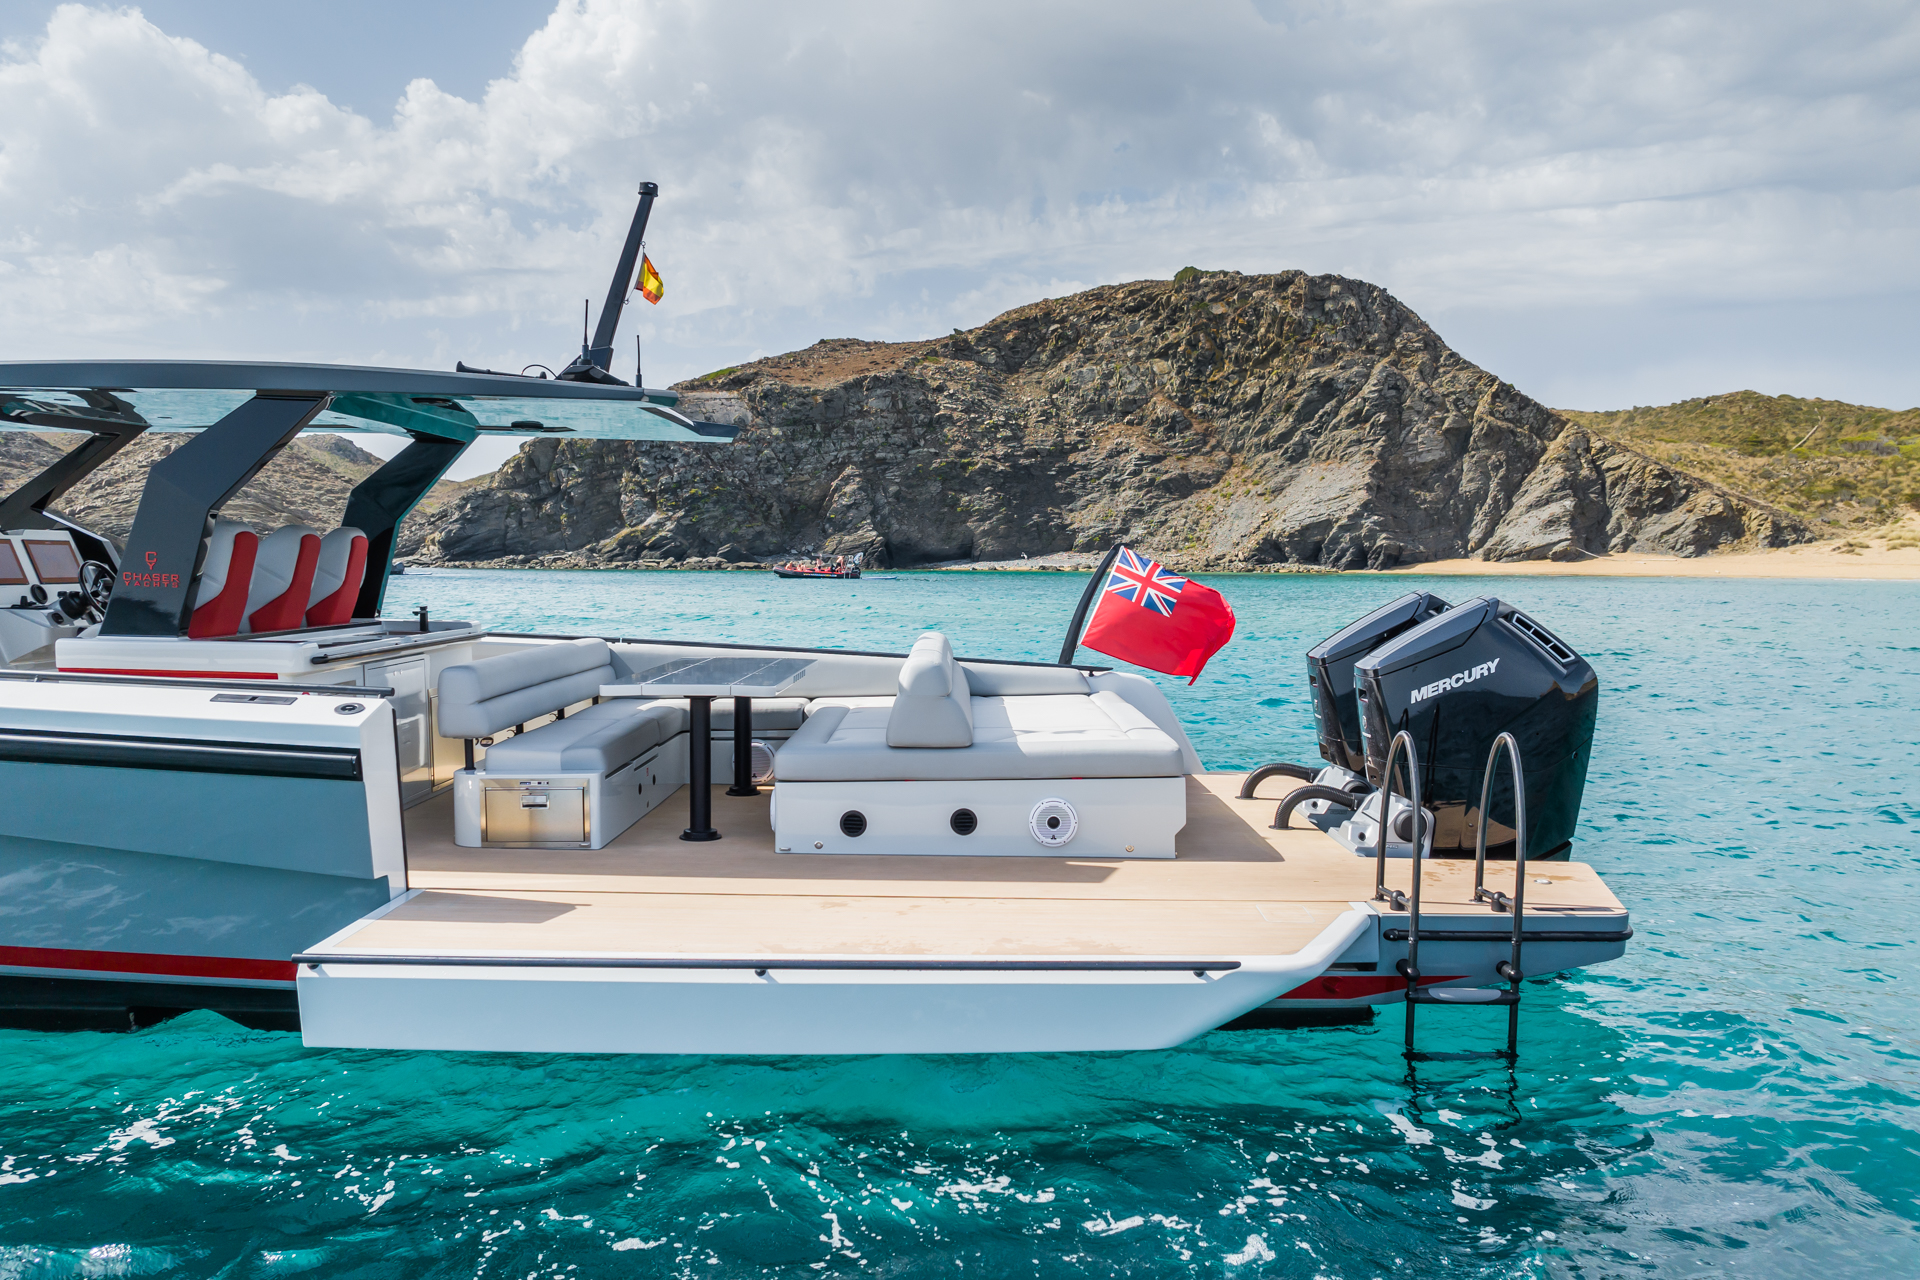 Chaser 50 Laguna for sale in Menorca